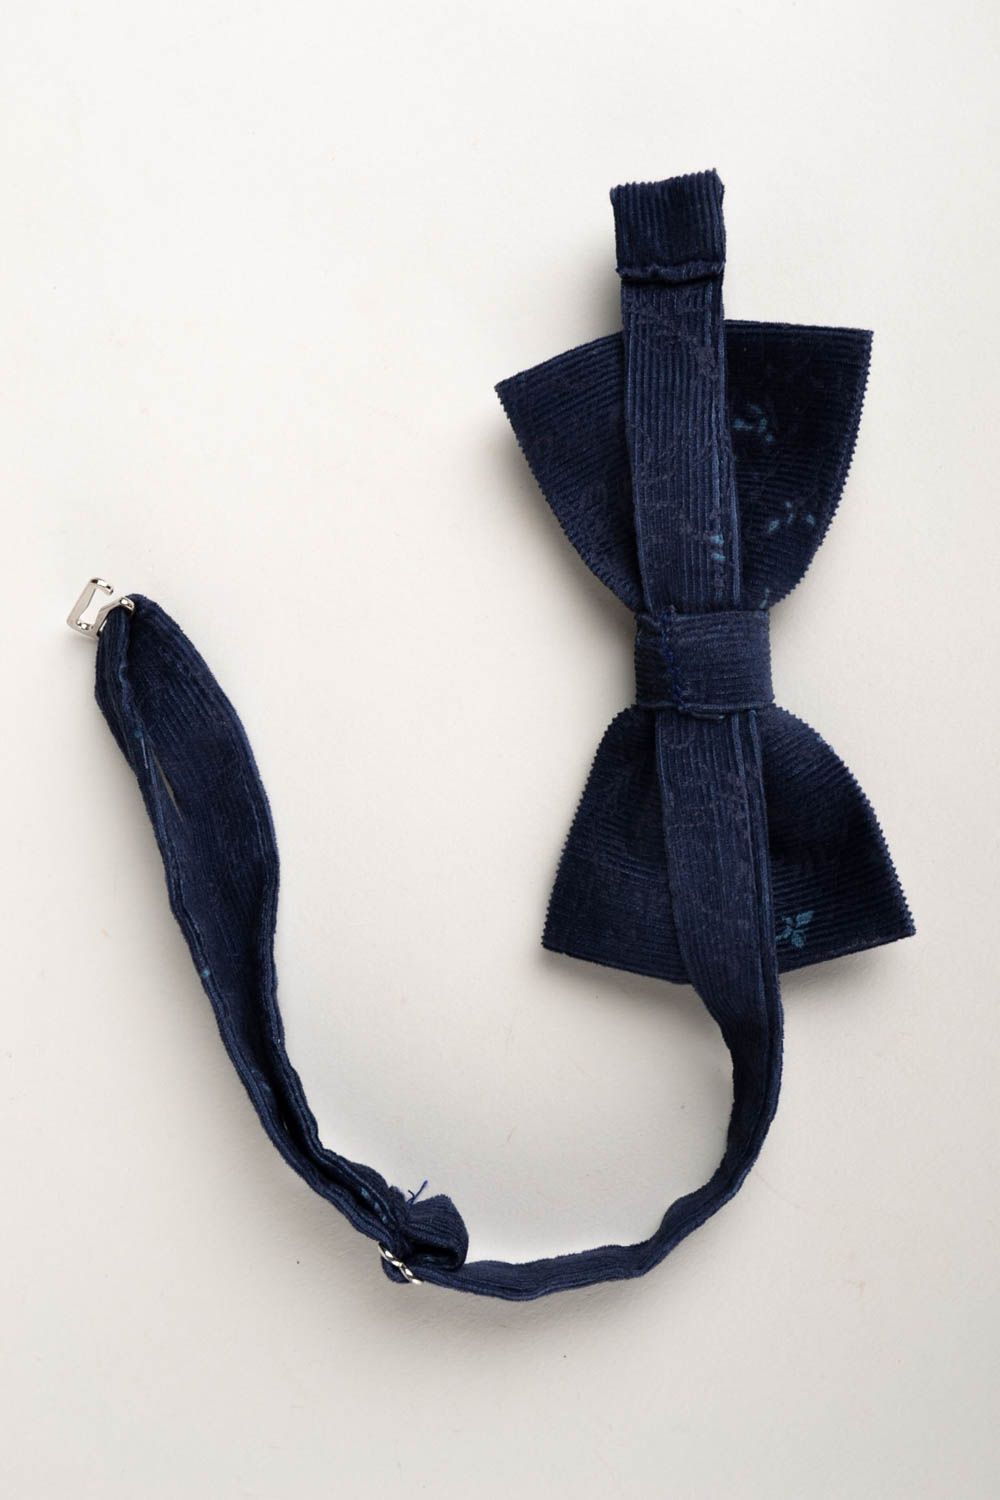 Corbata de lazo artesanal pajarita moderna azul marino accesorio unisex foto 1